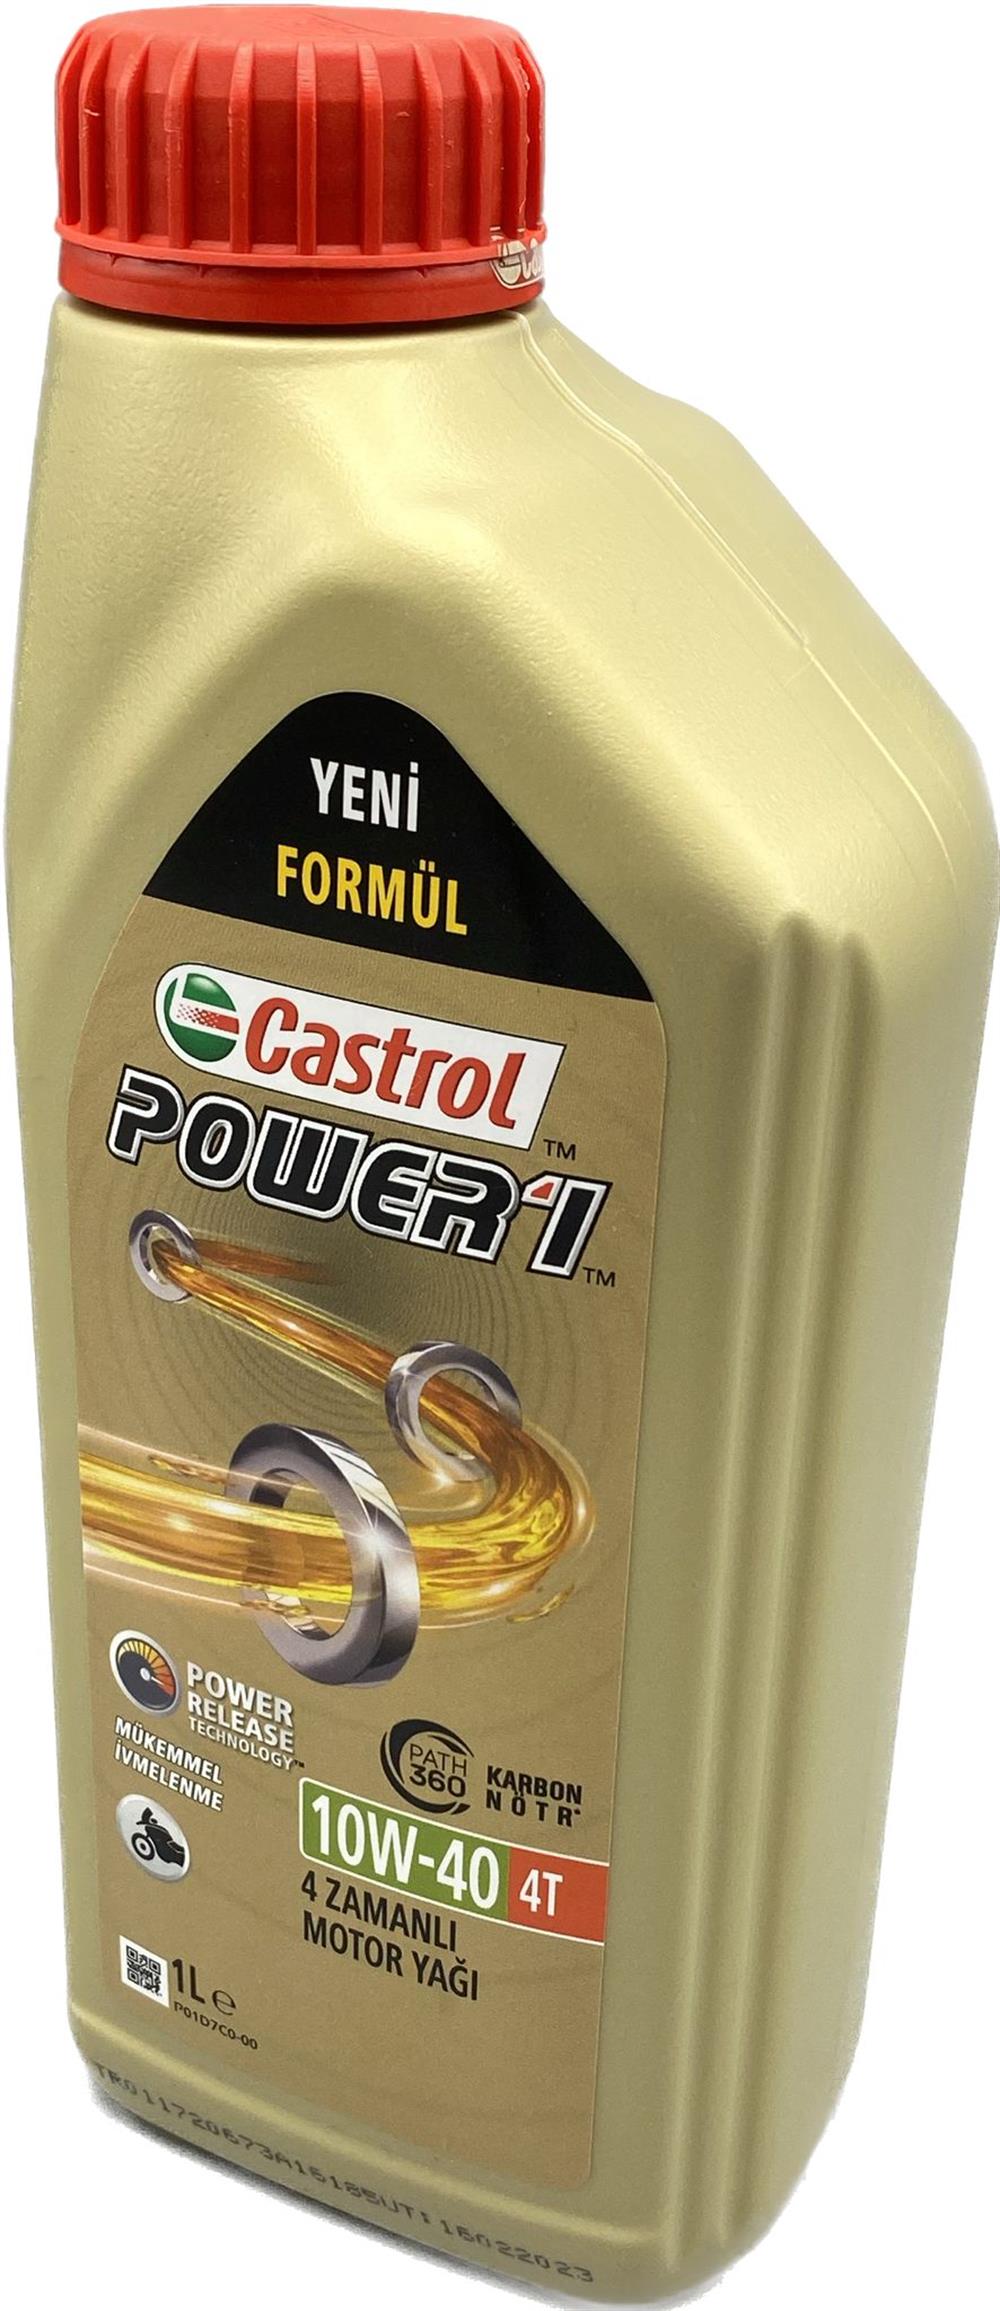 カストロール(Castrol) エンジンオイル POWER1 4T 10W-40 4L 二輪車4サイクルエ - メンテナンス用品